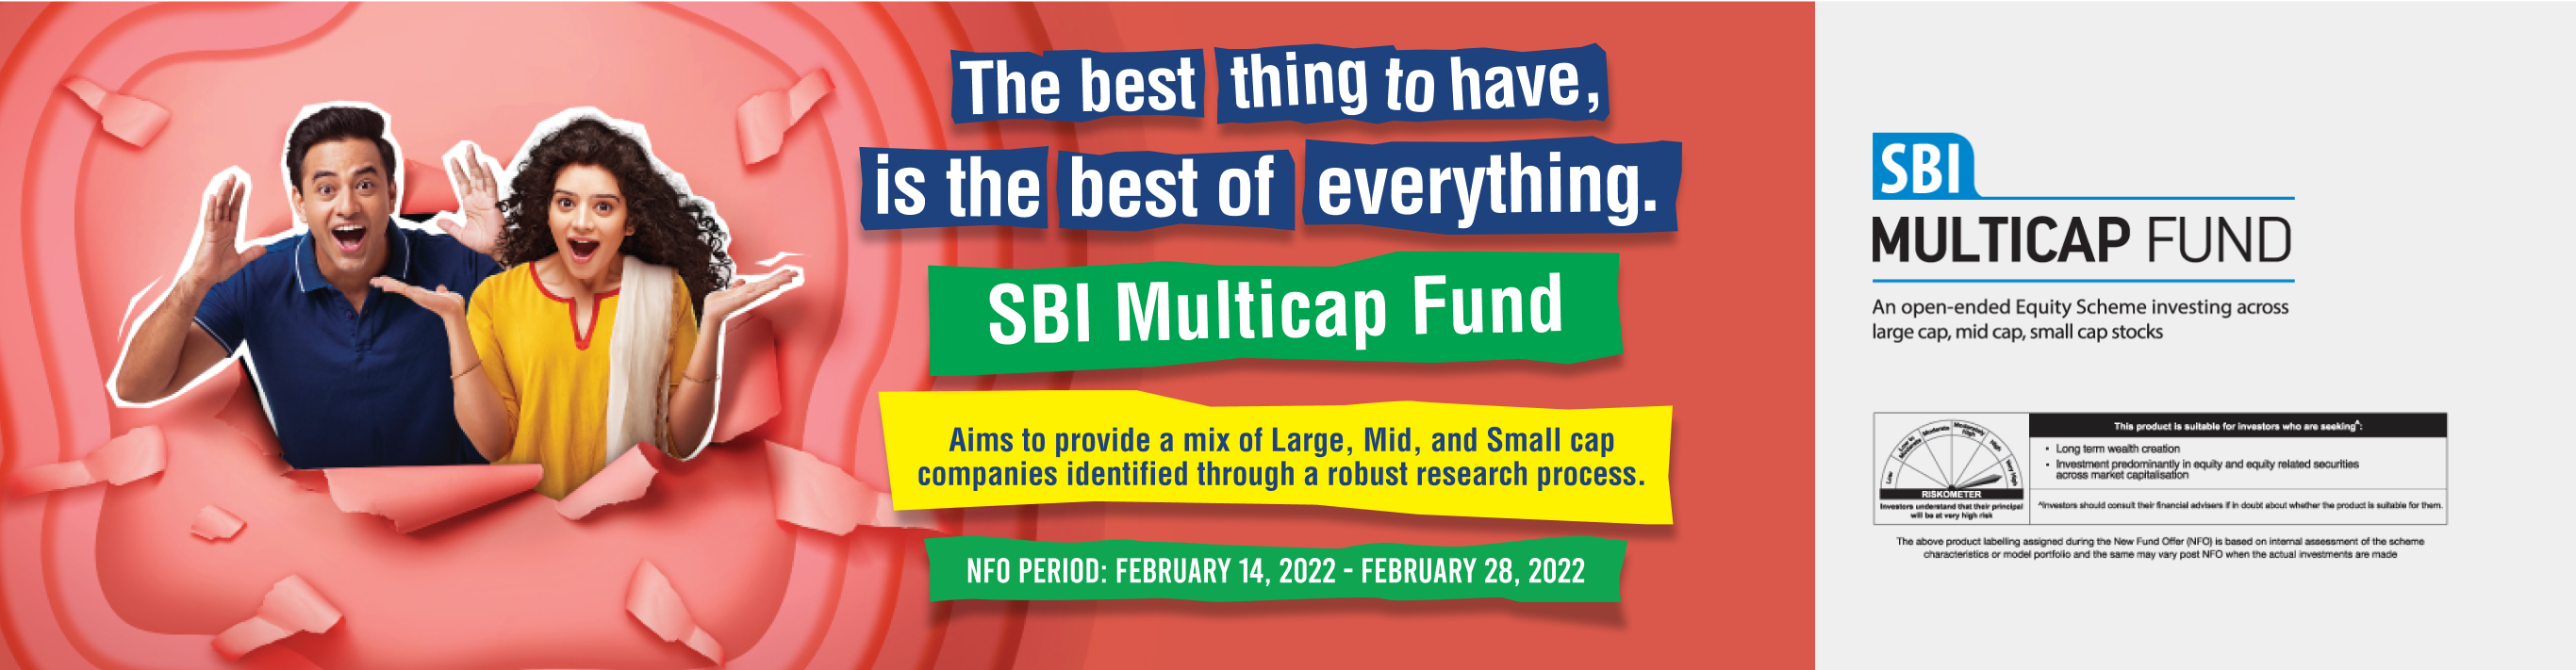 sbi-multicap-fund banner01